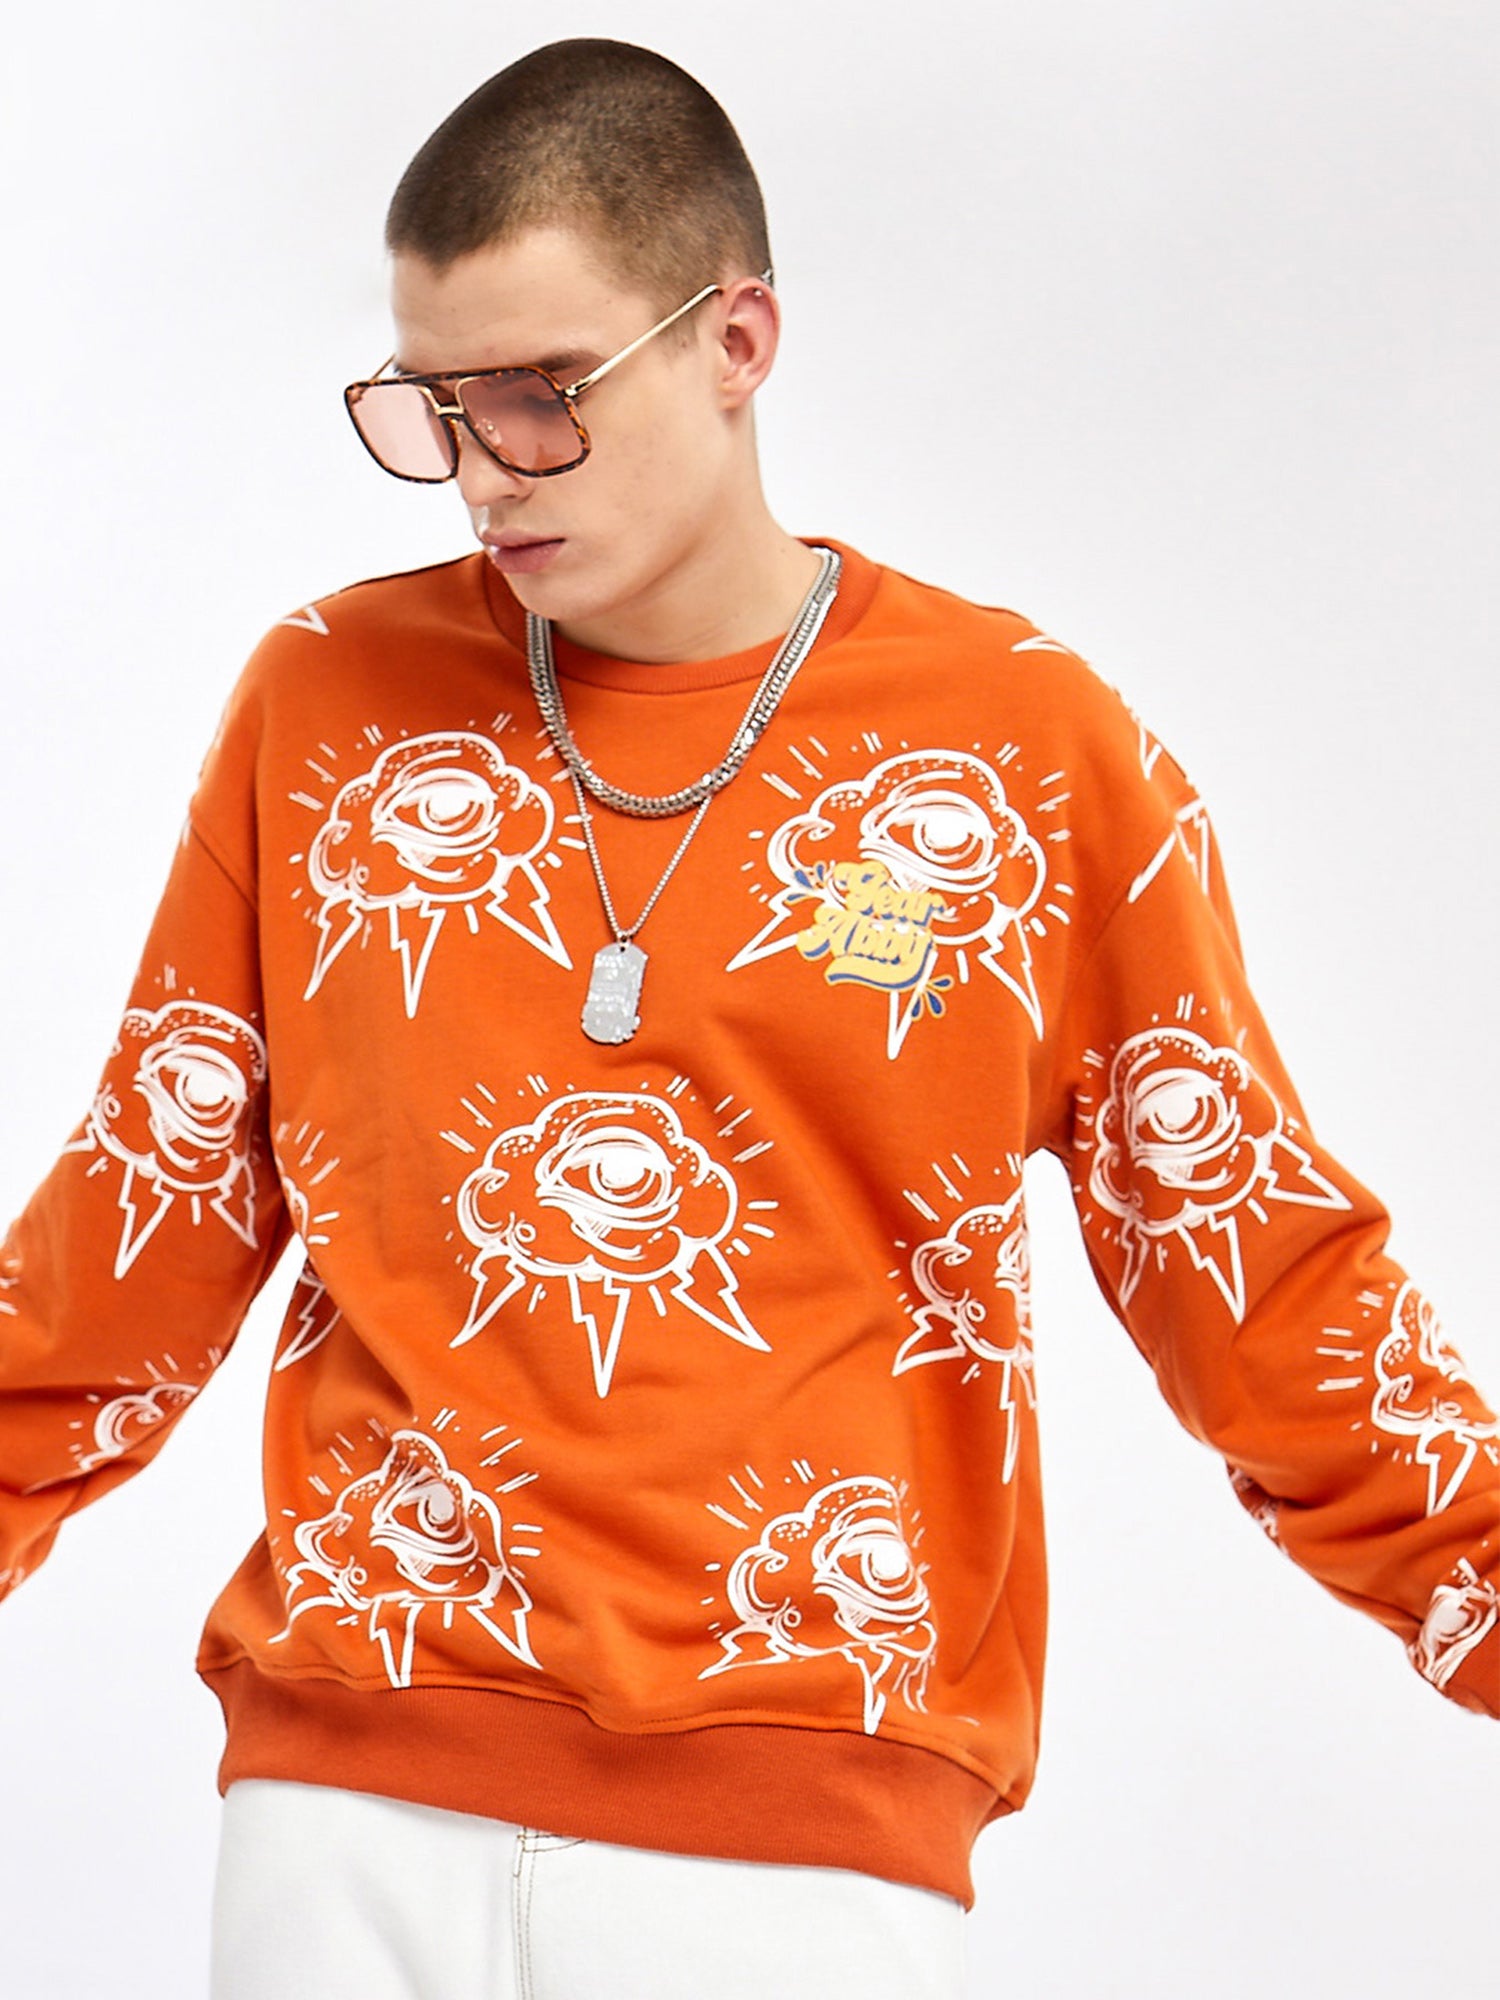 JUSTNOTAG Letterr Cotton Rundhals Orange Sweatshirts Tops